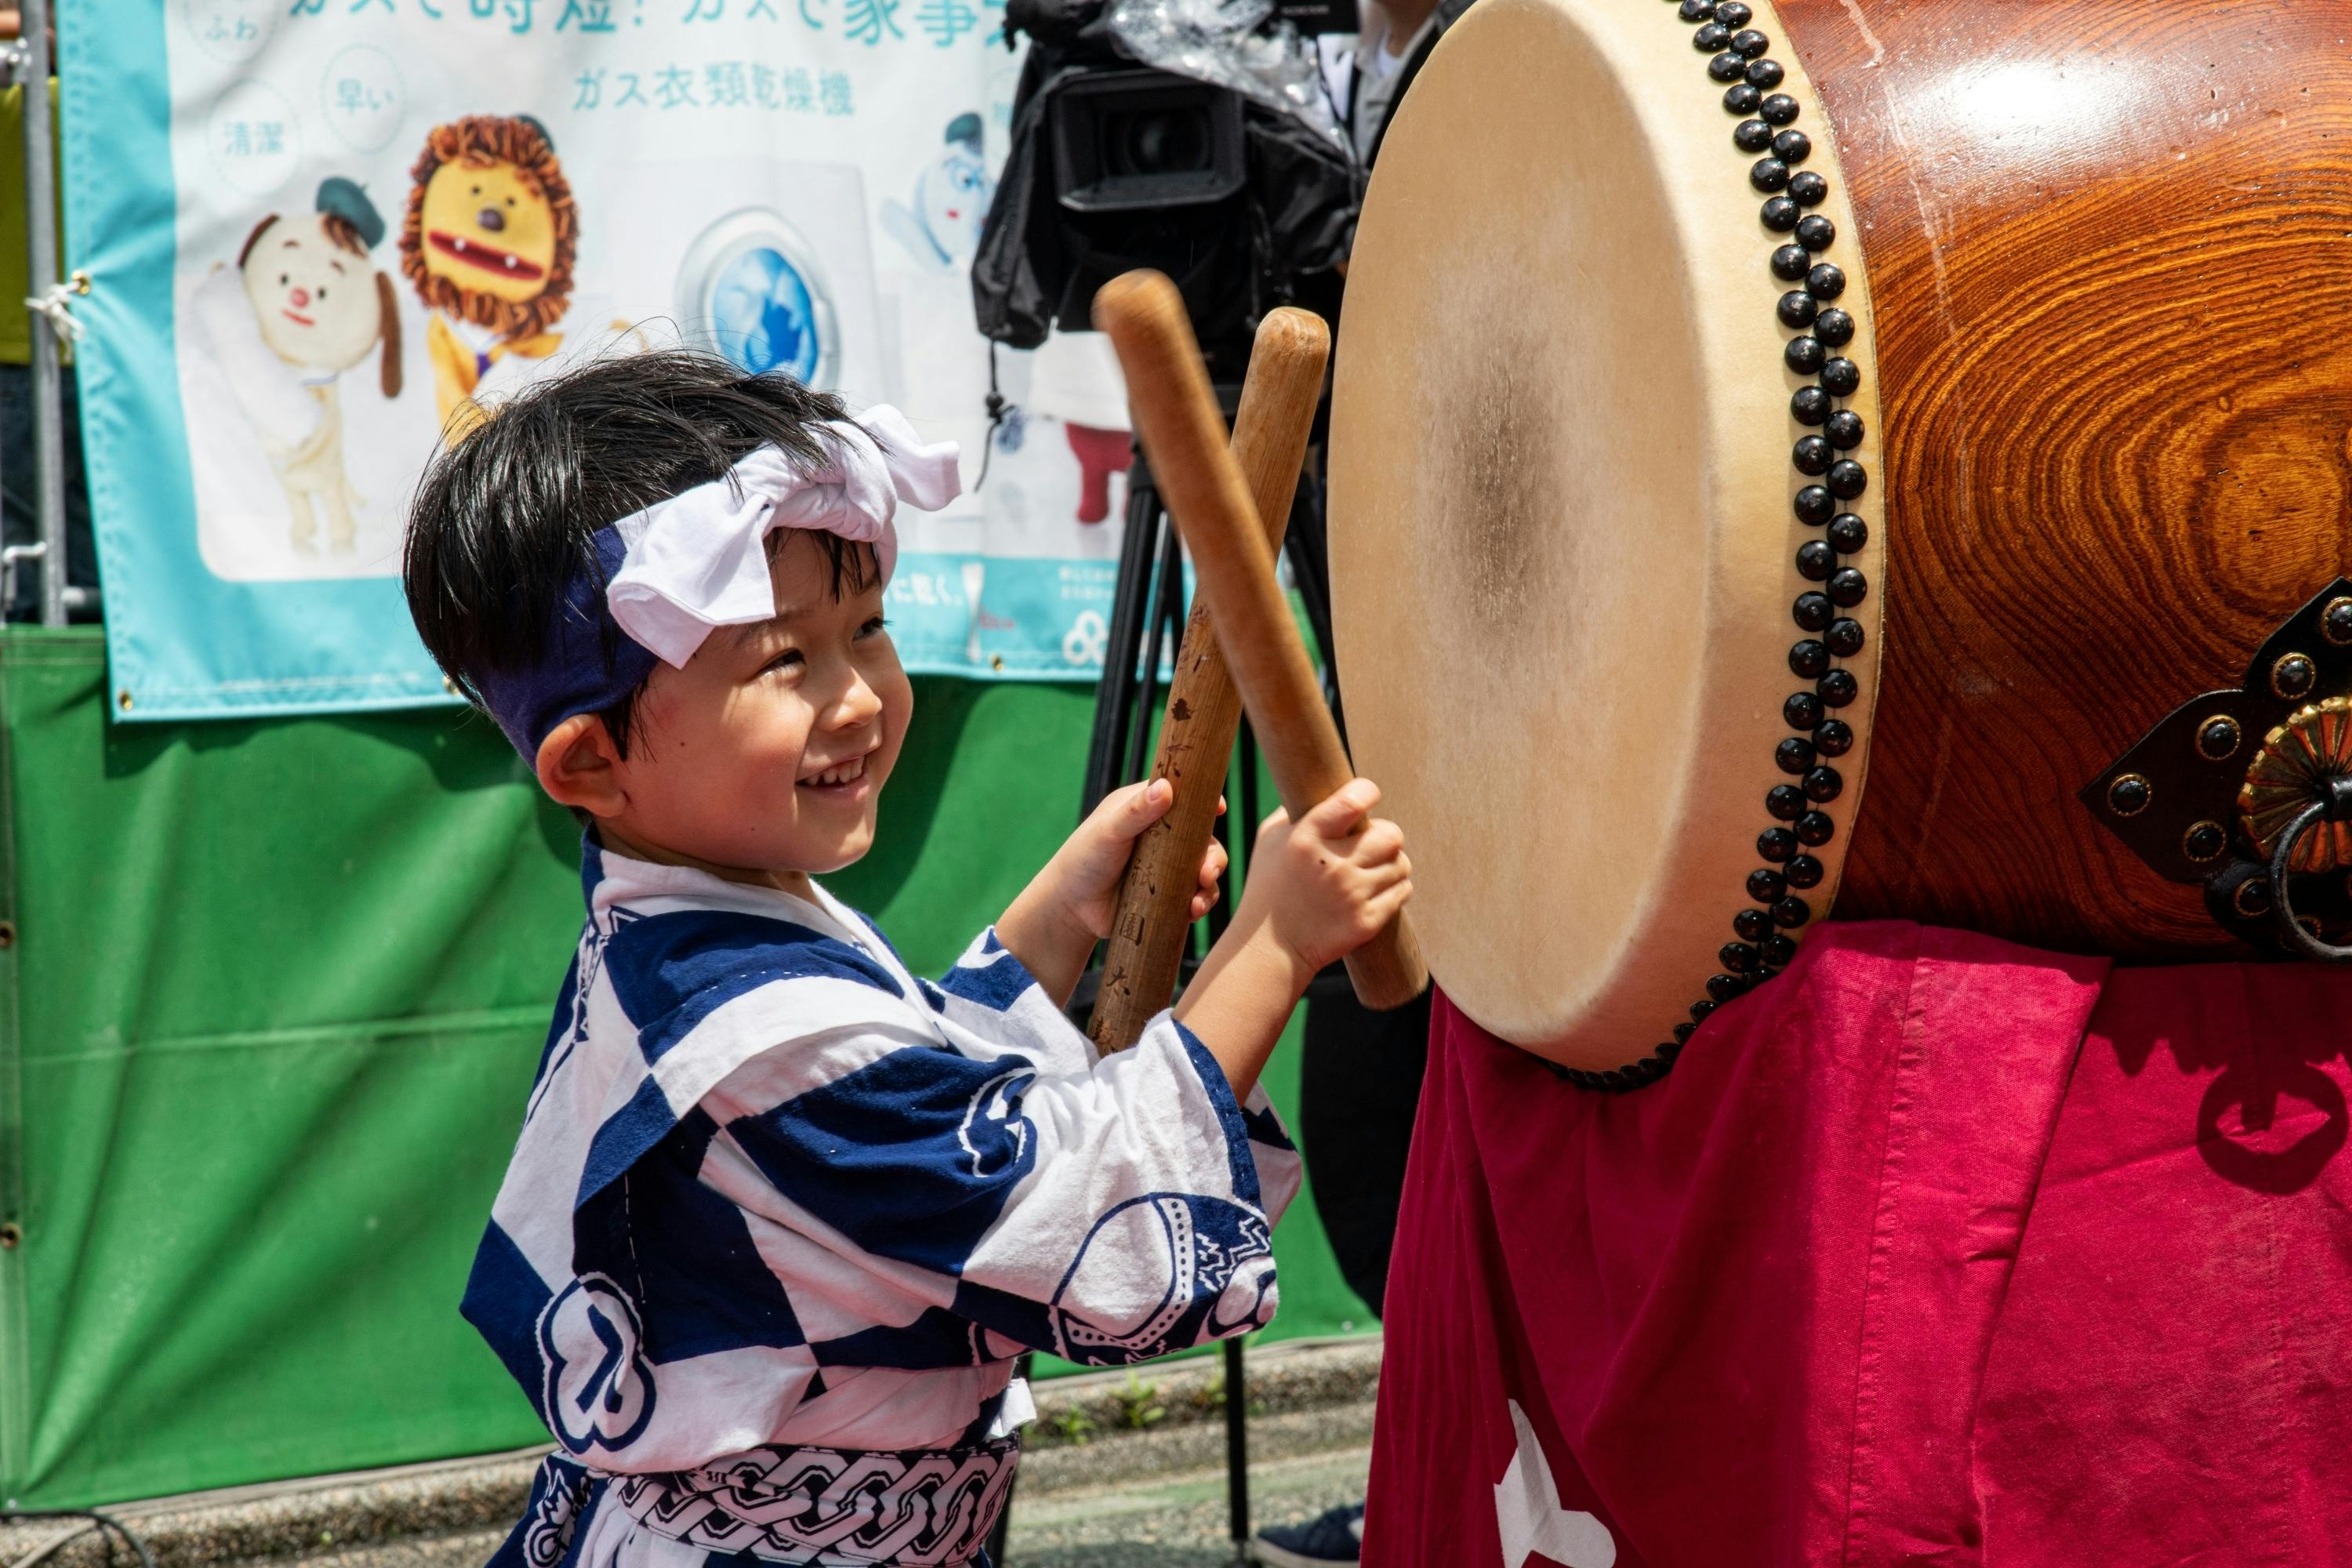 小倉祇園太鼓】コロナ禍を乗り越えて、伝統の太鼓芸を未来に繋ぎたい